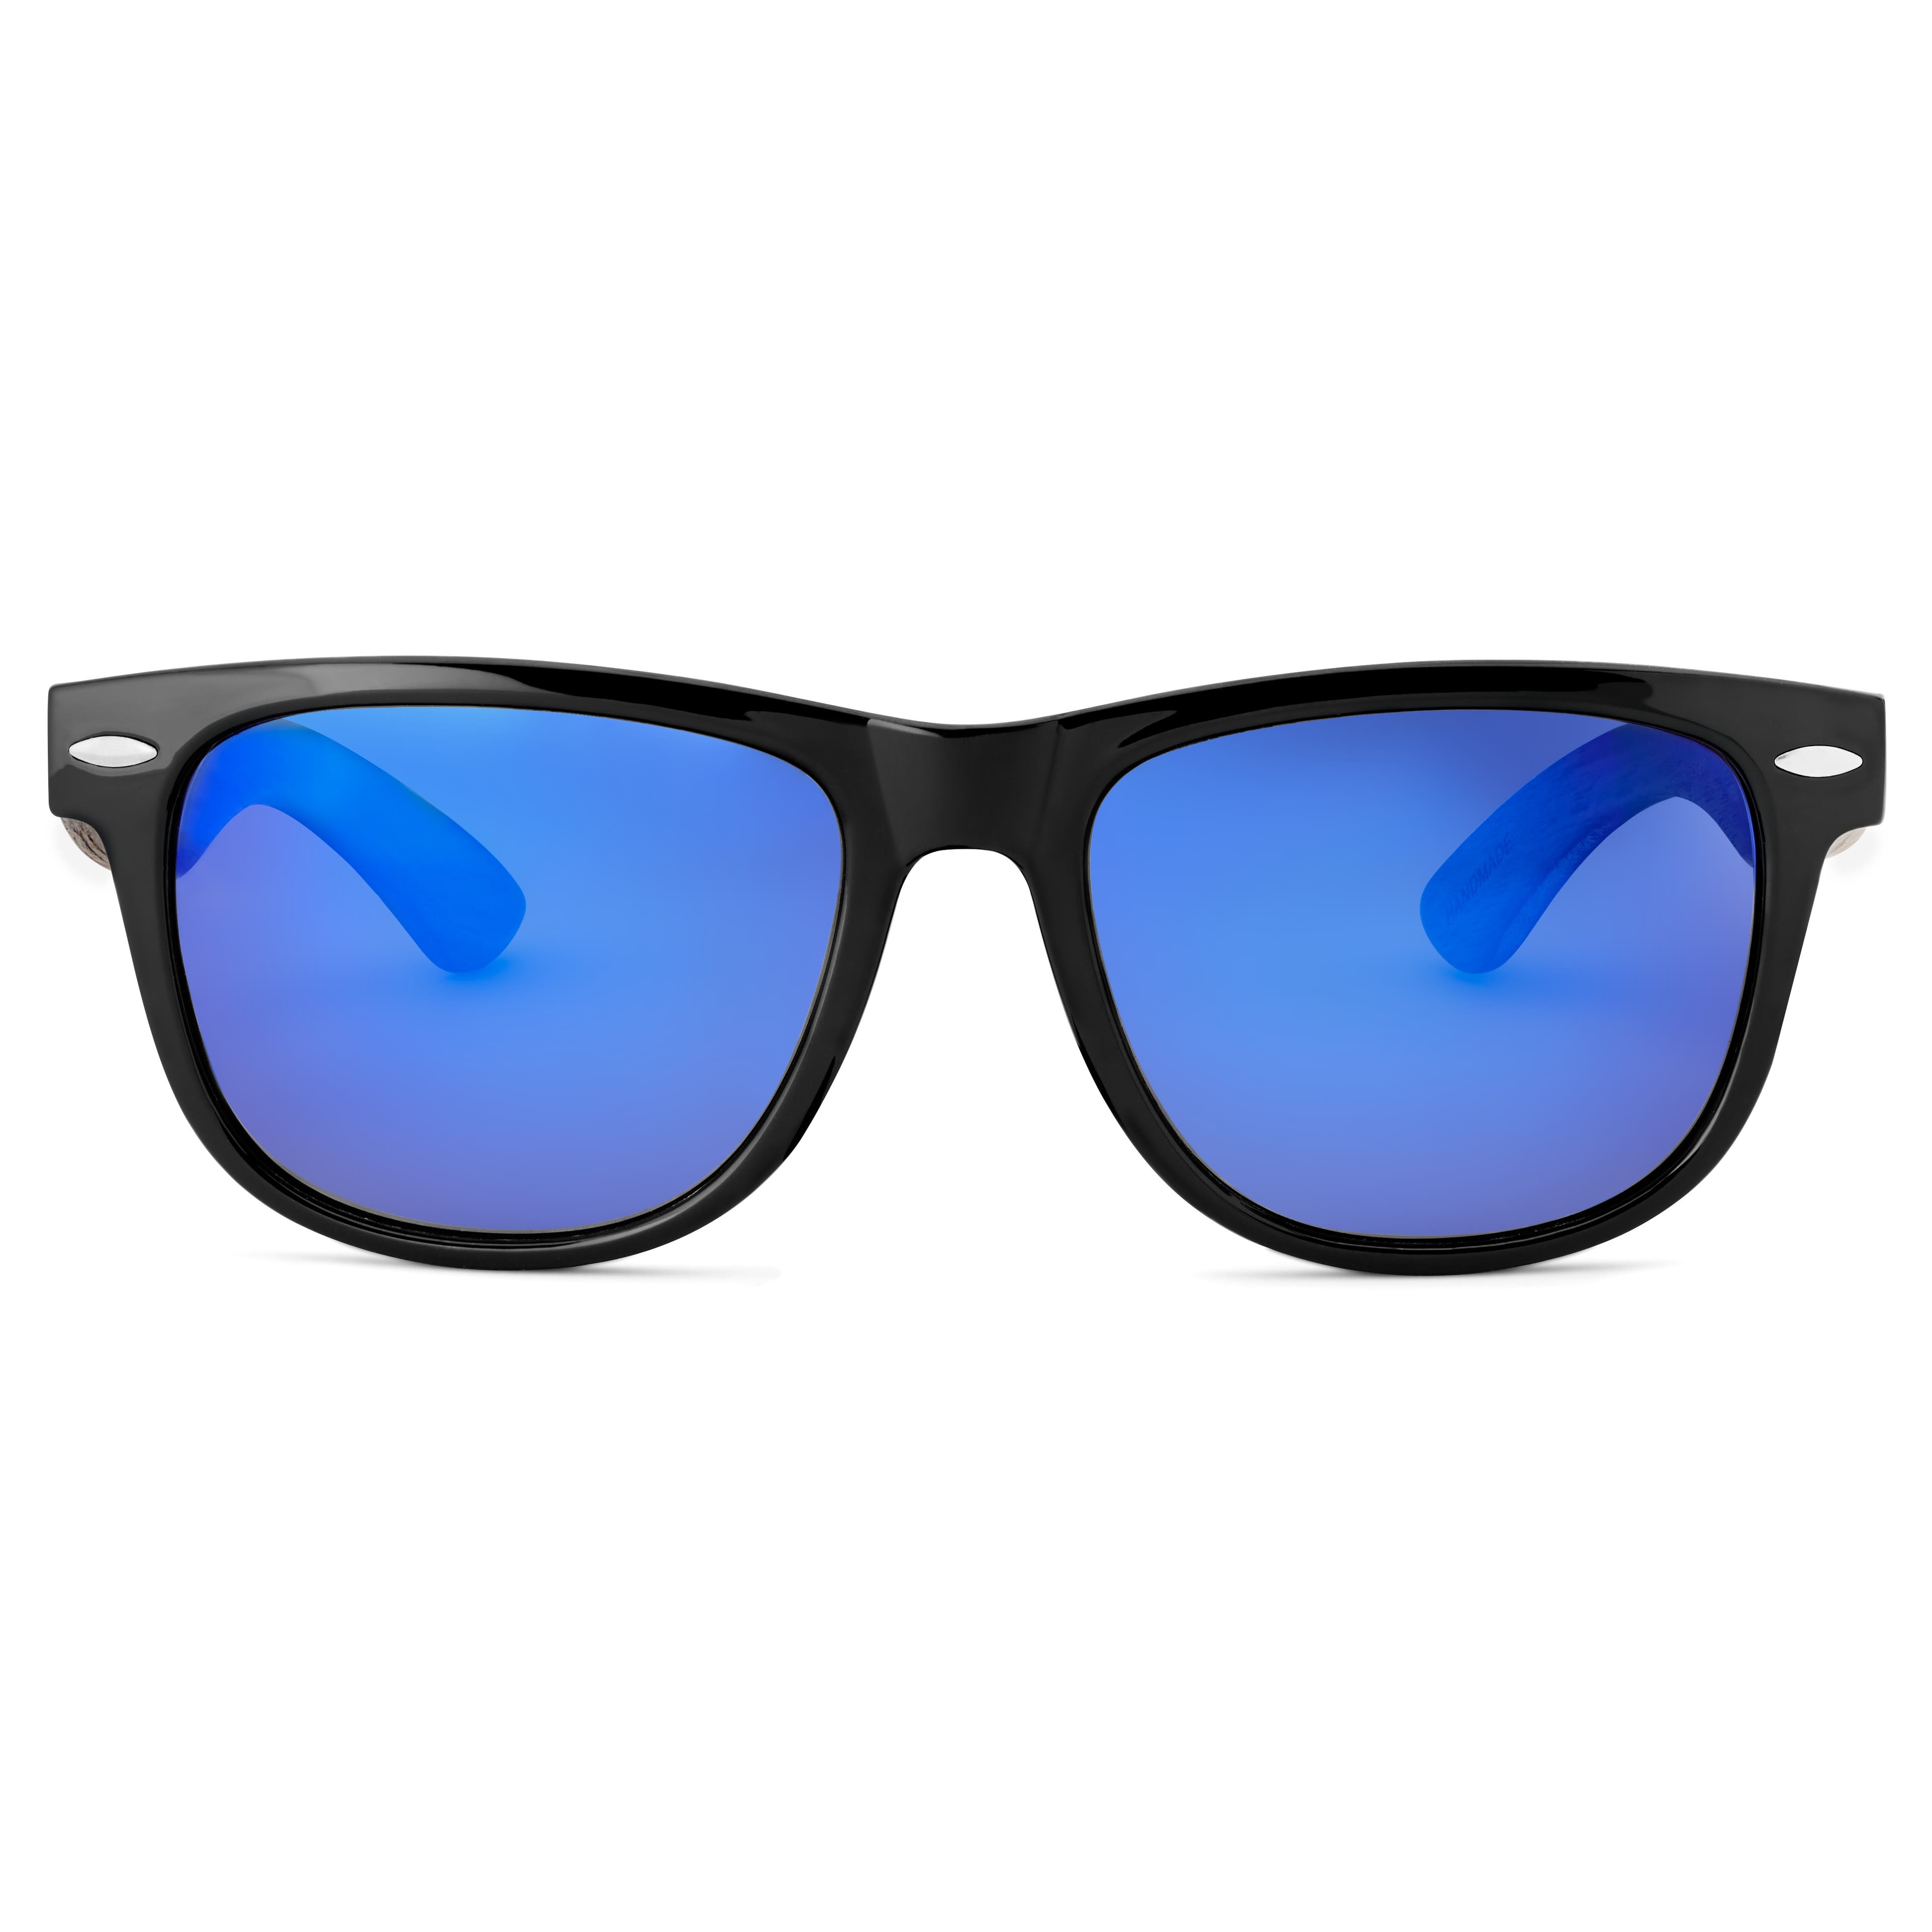 Černé a modré retro polarizační sluneční brýle s dřevěnými nožičkami